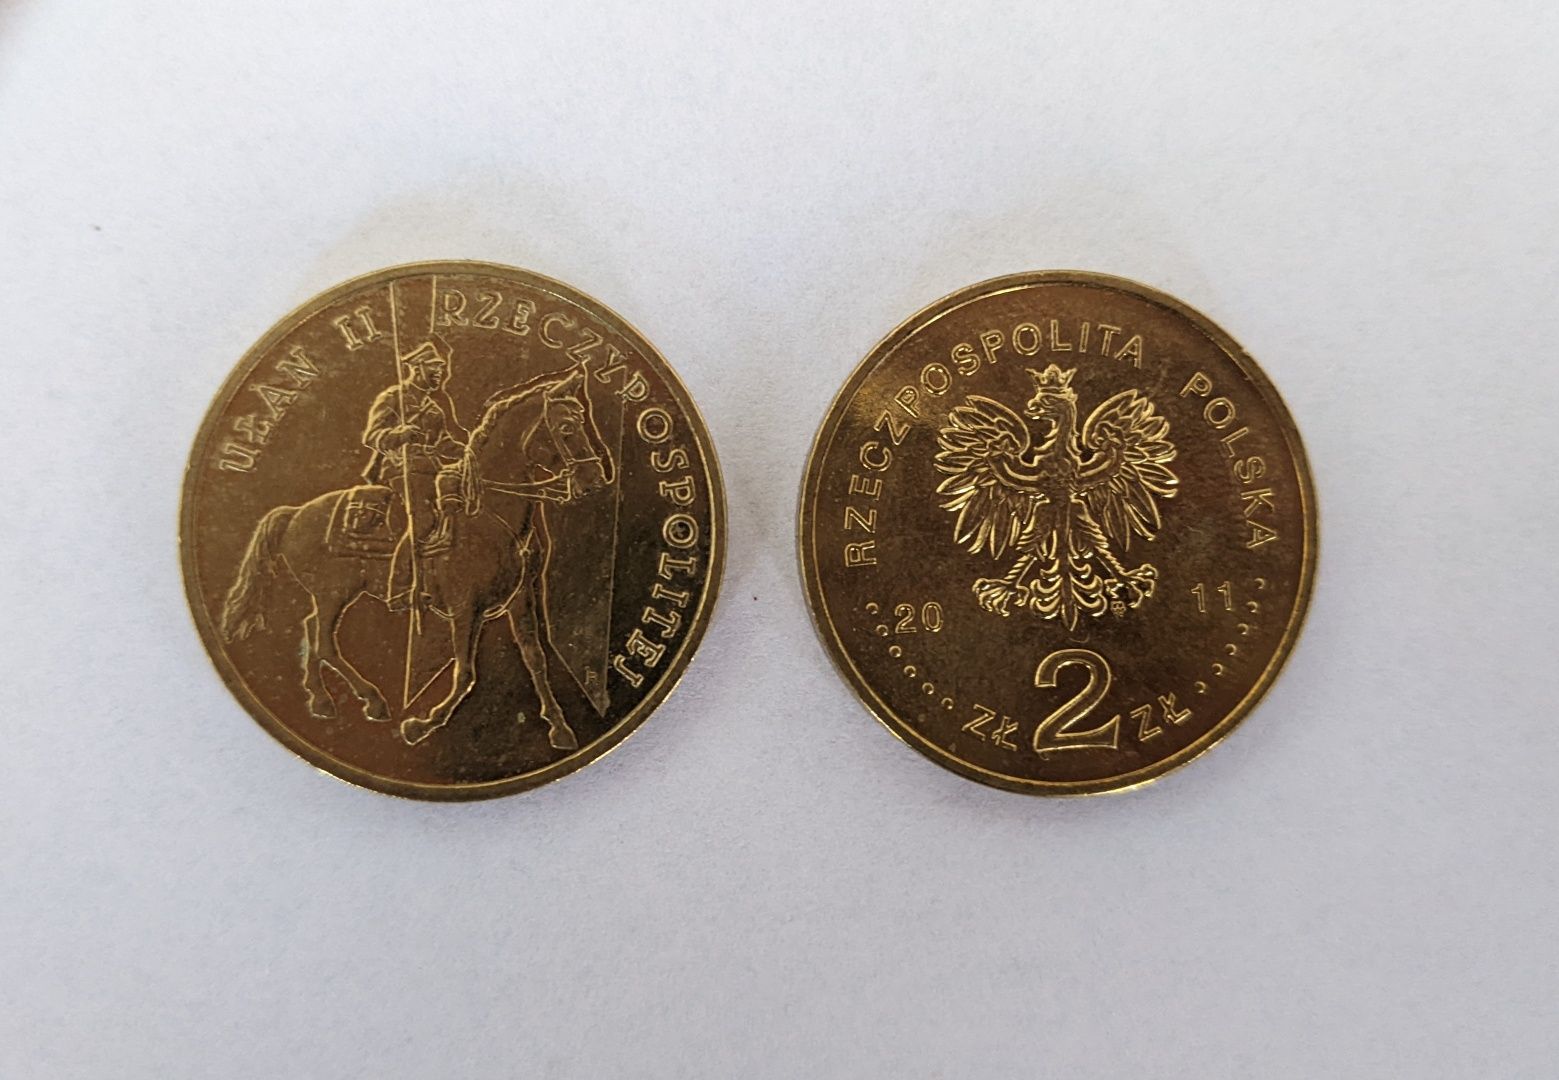 Moneta 2 zł Ułan II Rzeczpospolitej 2011 r.